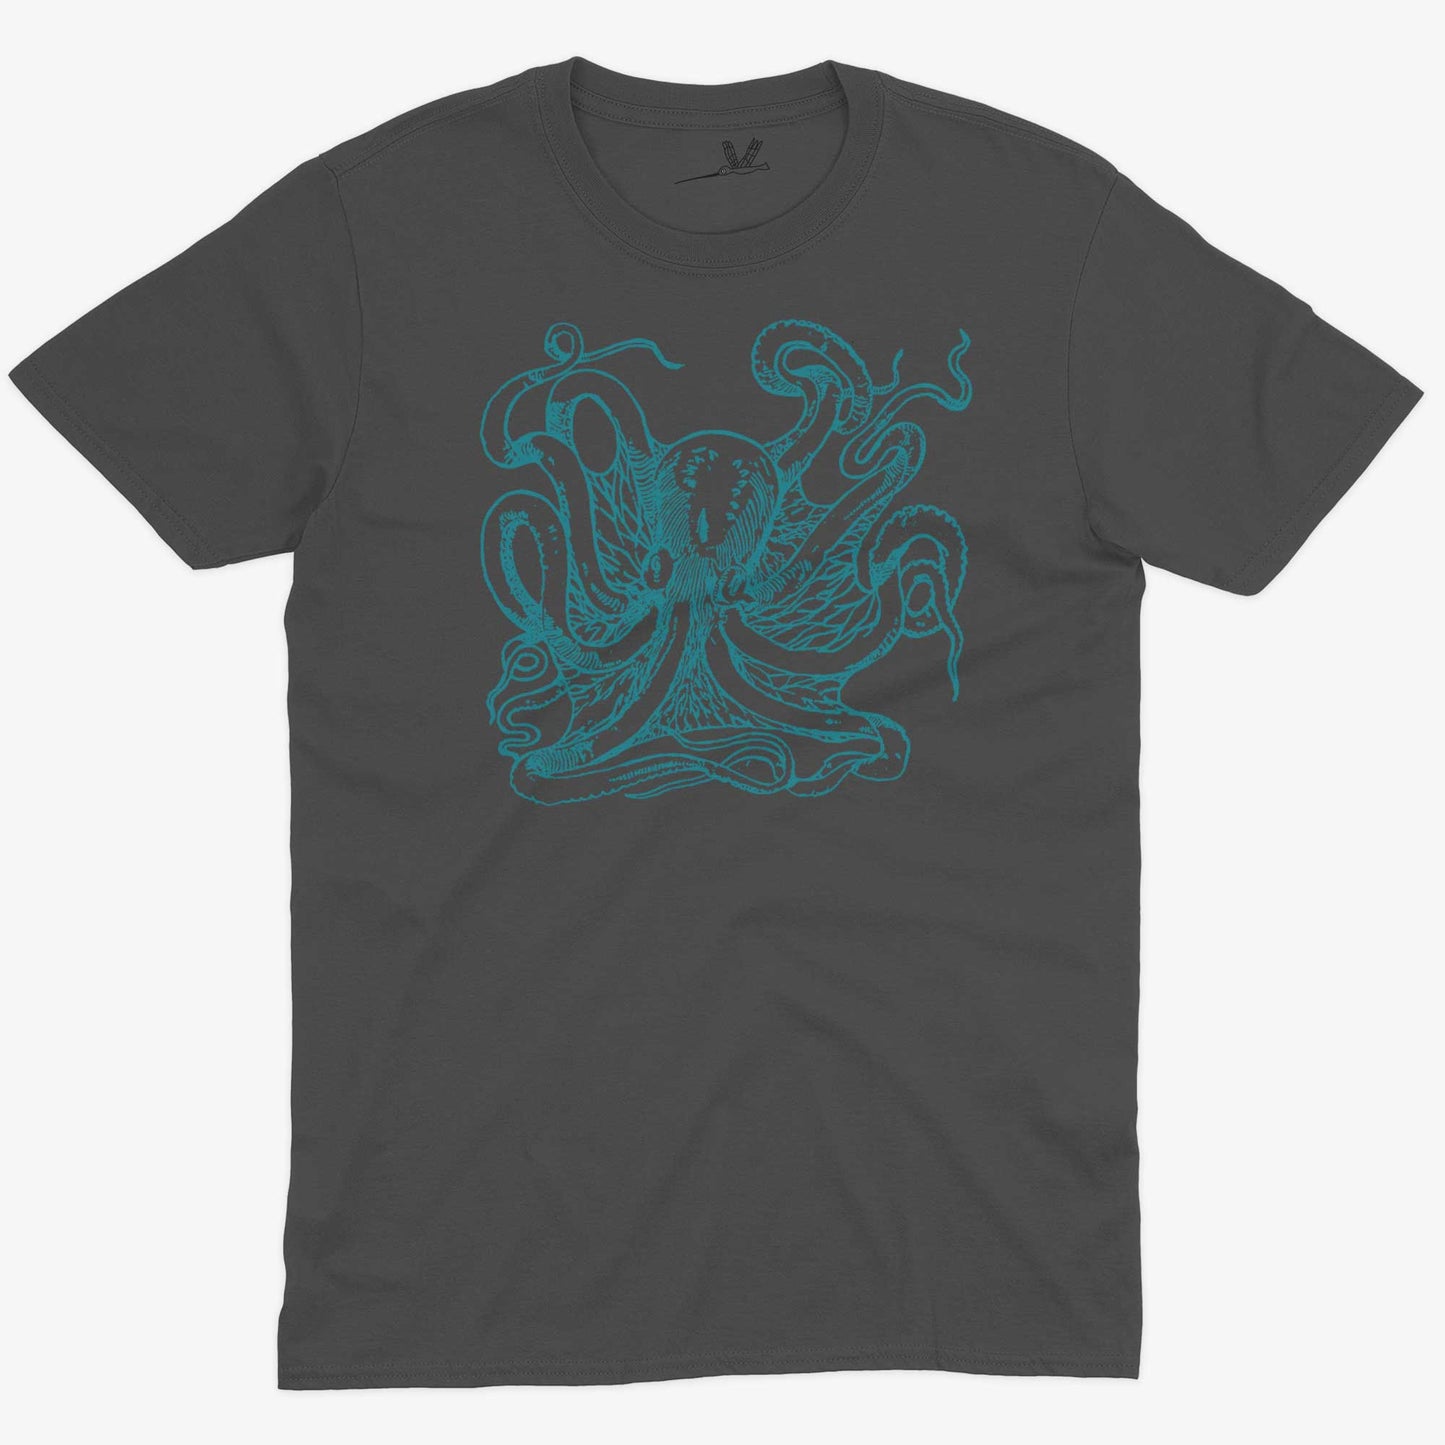 Giant Octopus Unisex Or Women's Cotton T-shirt-Asphalt-Unisex